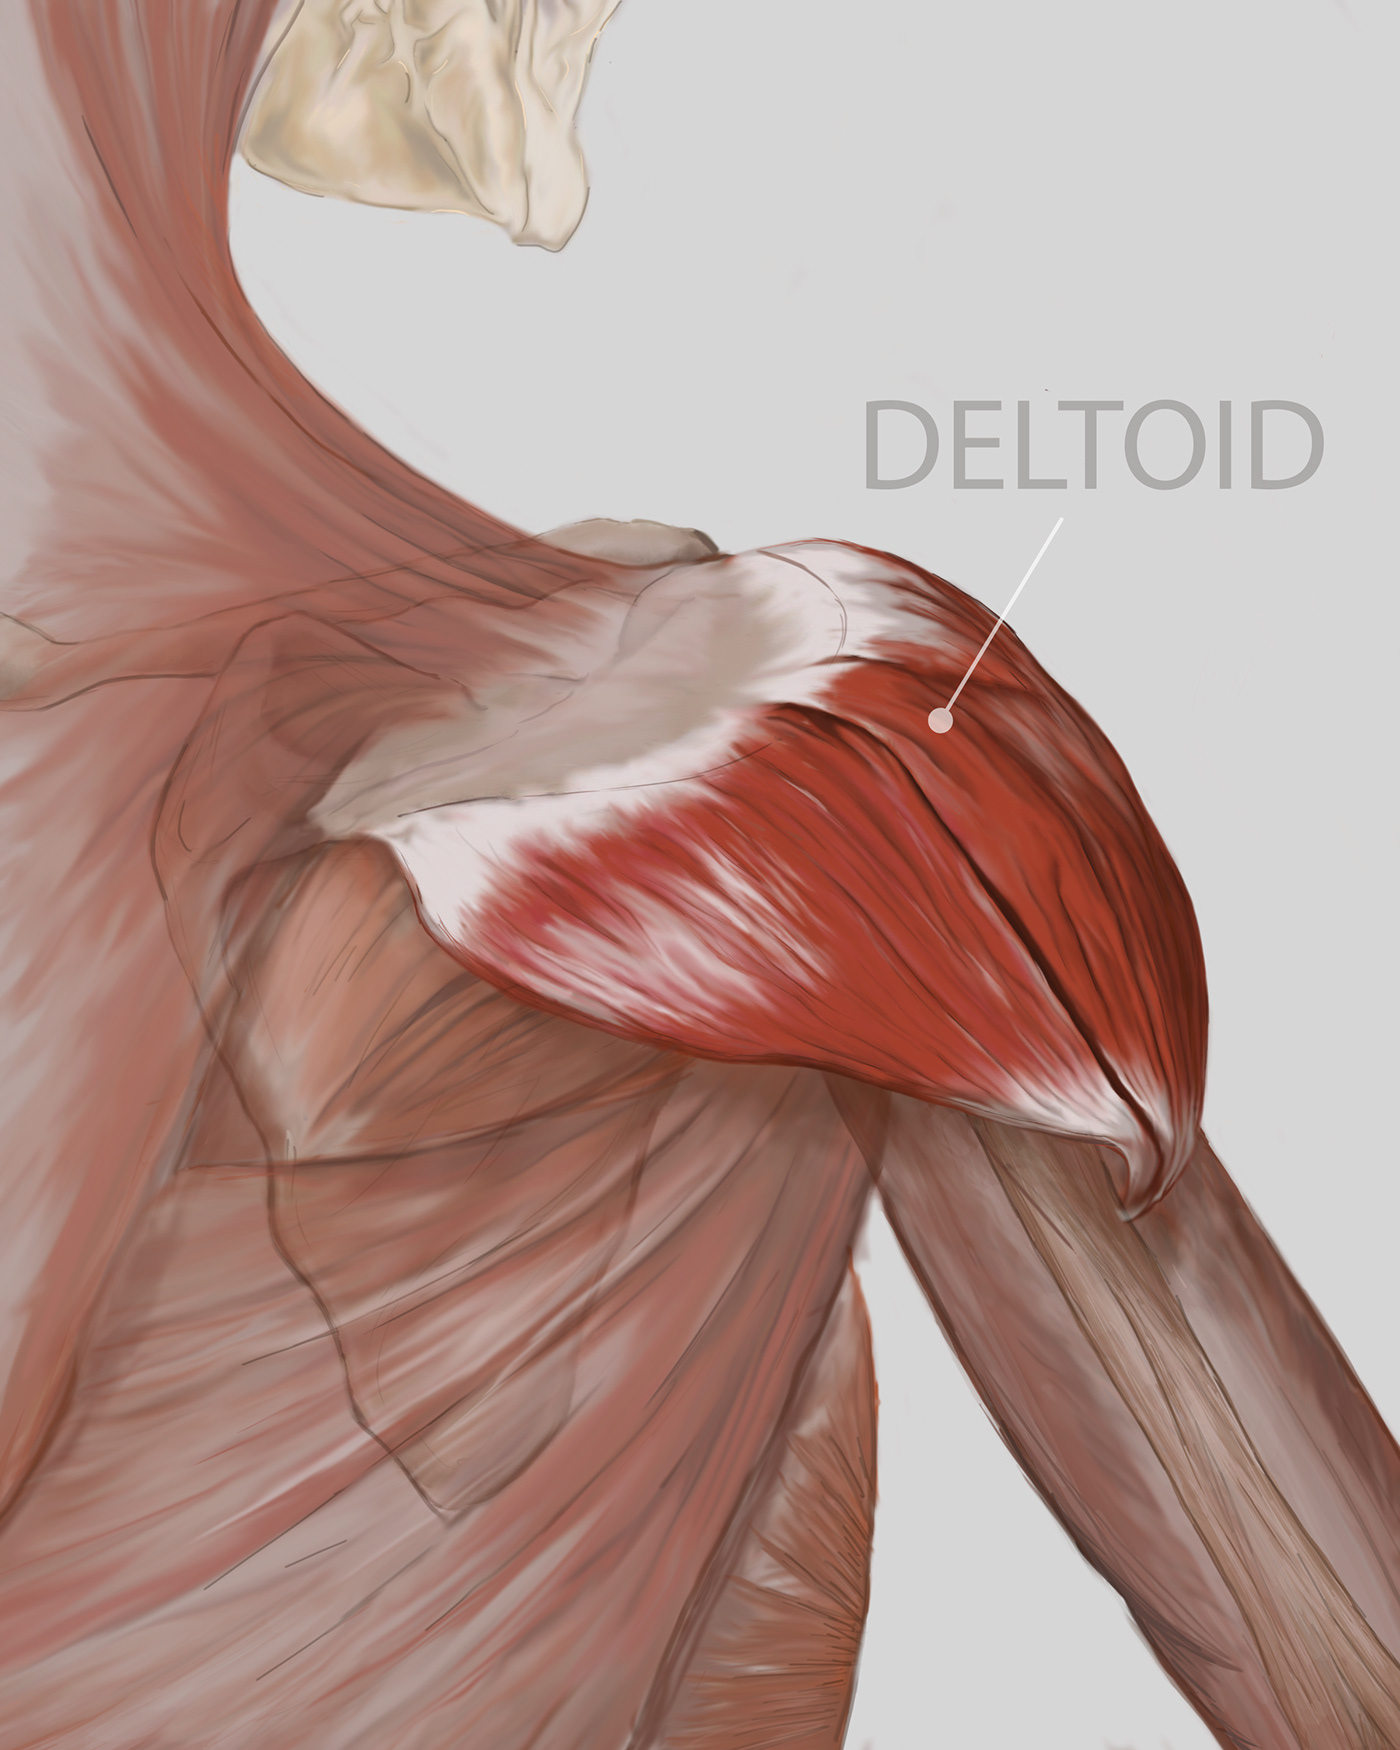 deltoid medical illustration muscle photoshop skeleton bones Drawing  artwork sketch digital illustration